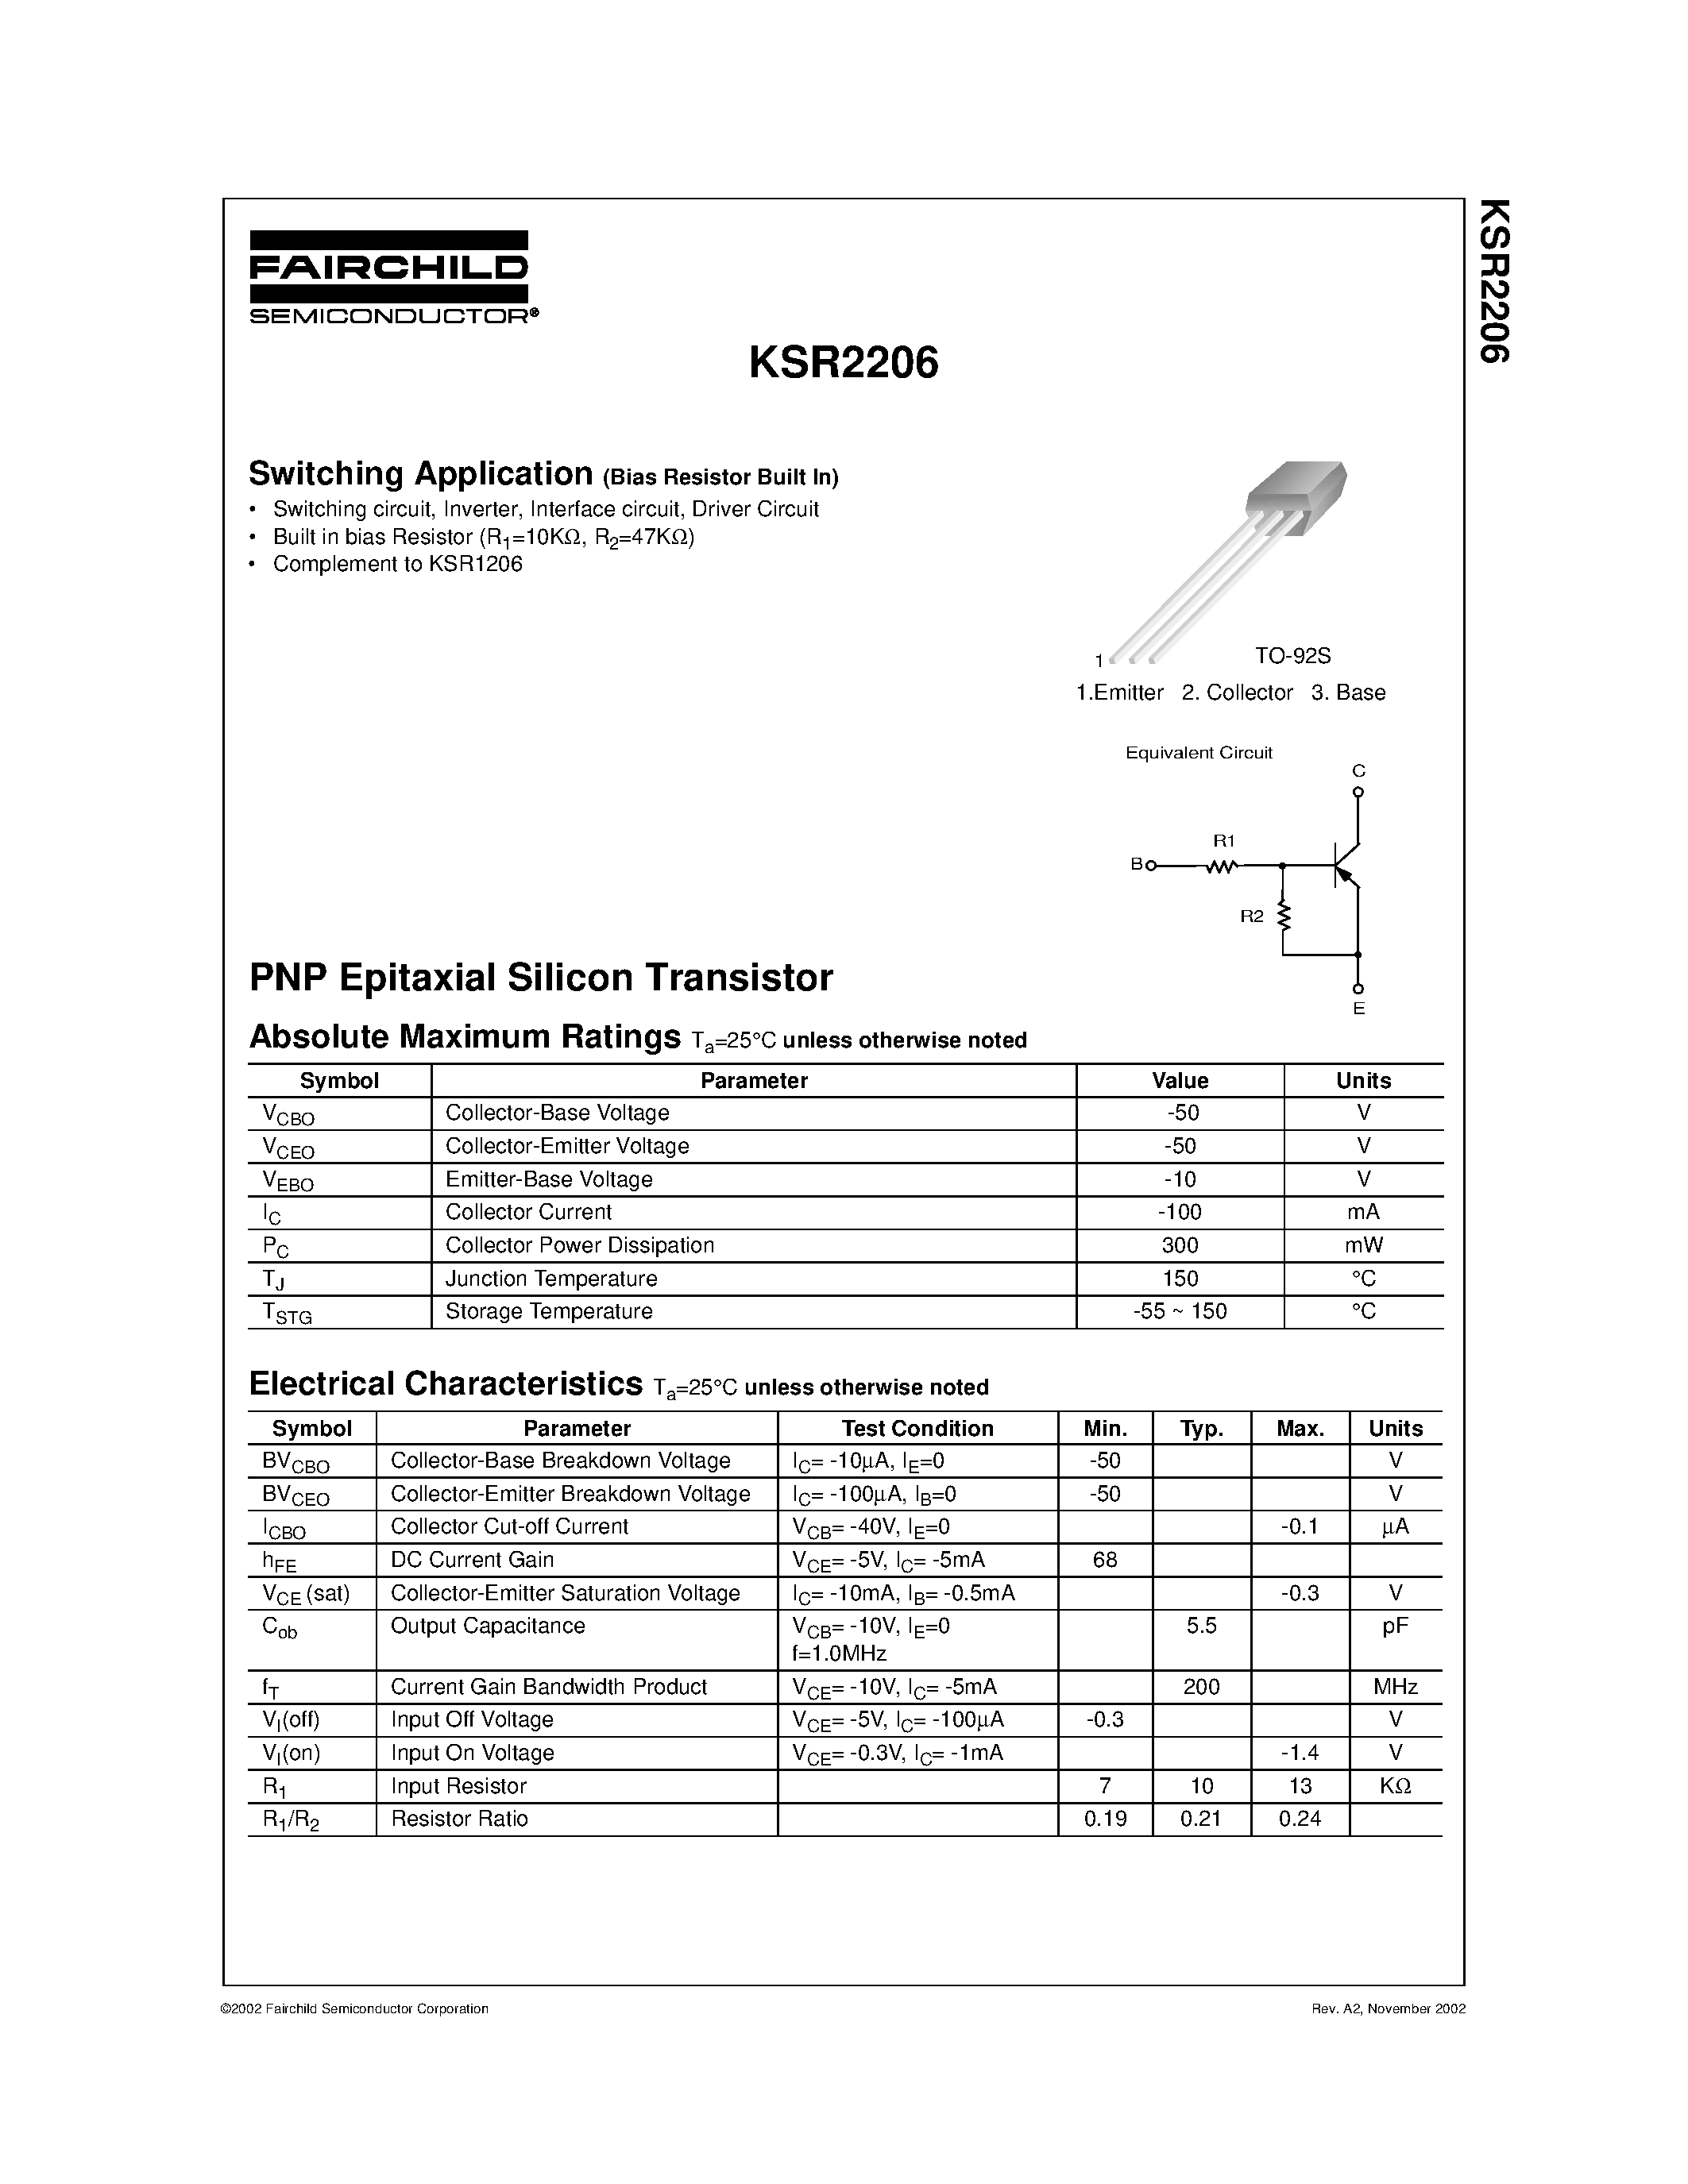 Даташит KSR2206 - Switching Application страница 1